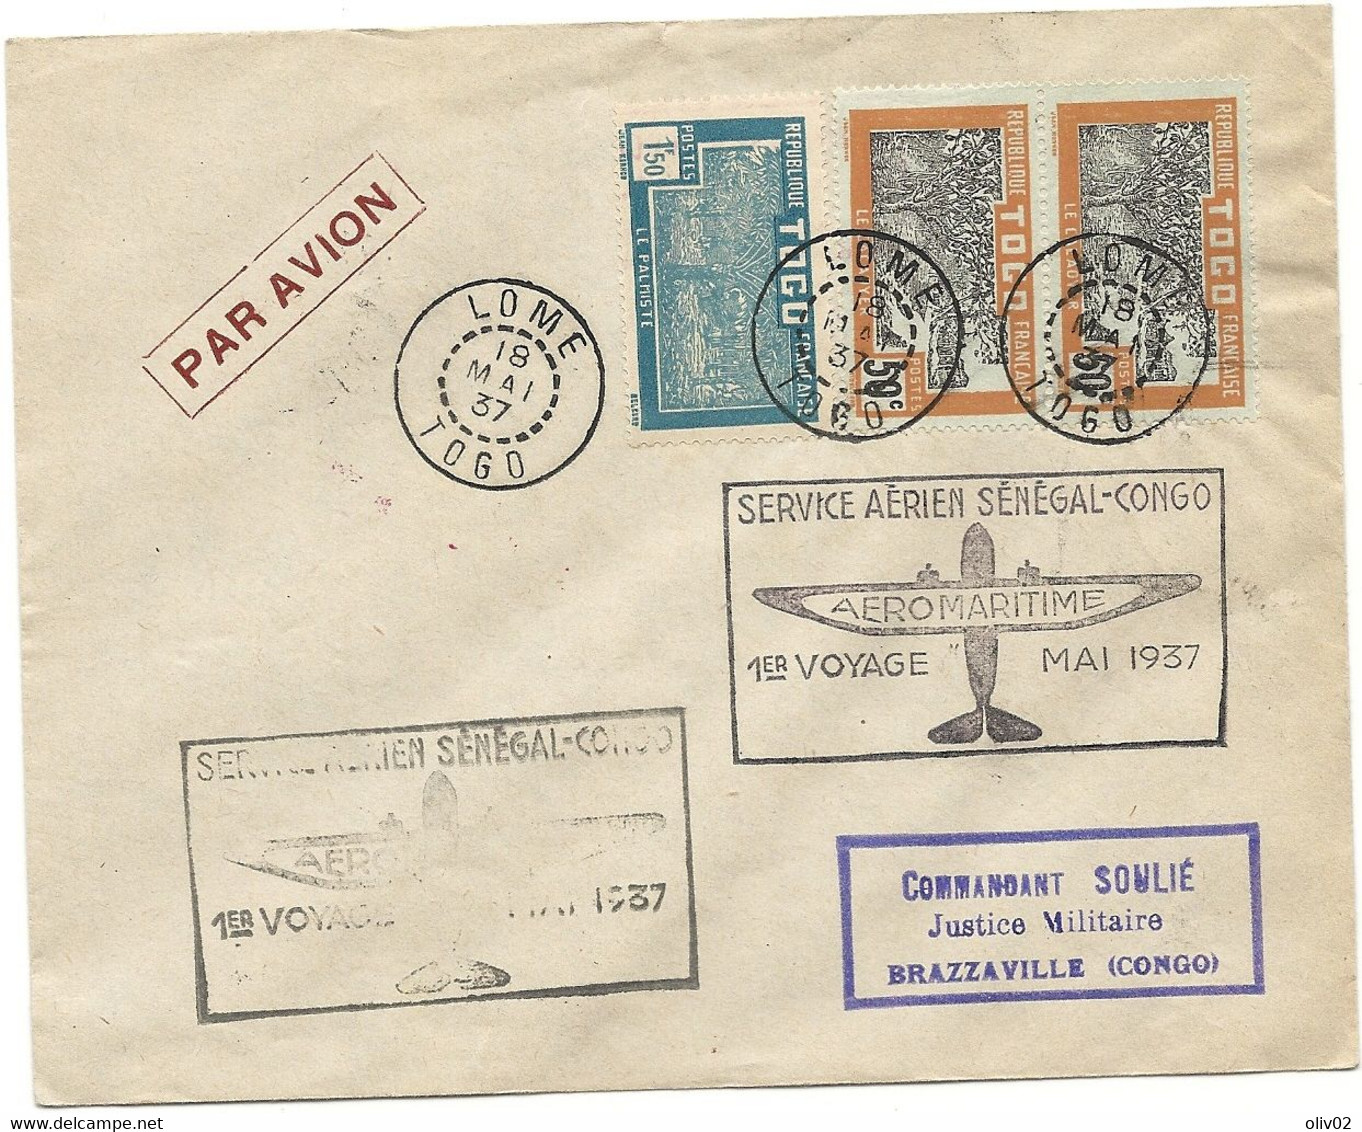 LOME - TOGO. Service Aérien SENEGAL-CONGO. 1er Voyage - Mai 1937 - Lettres & Documents